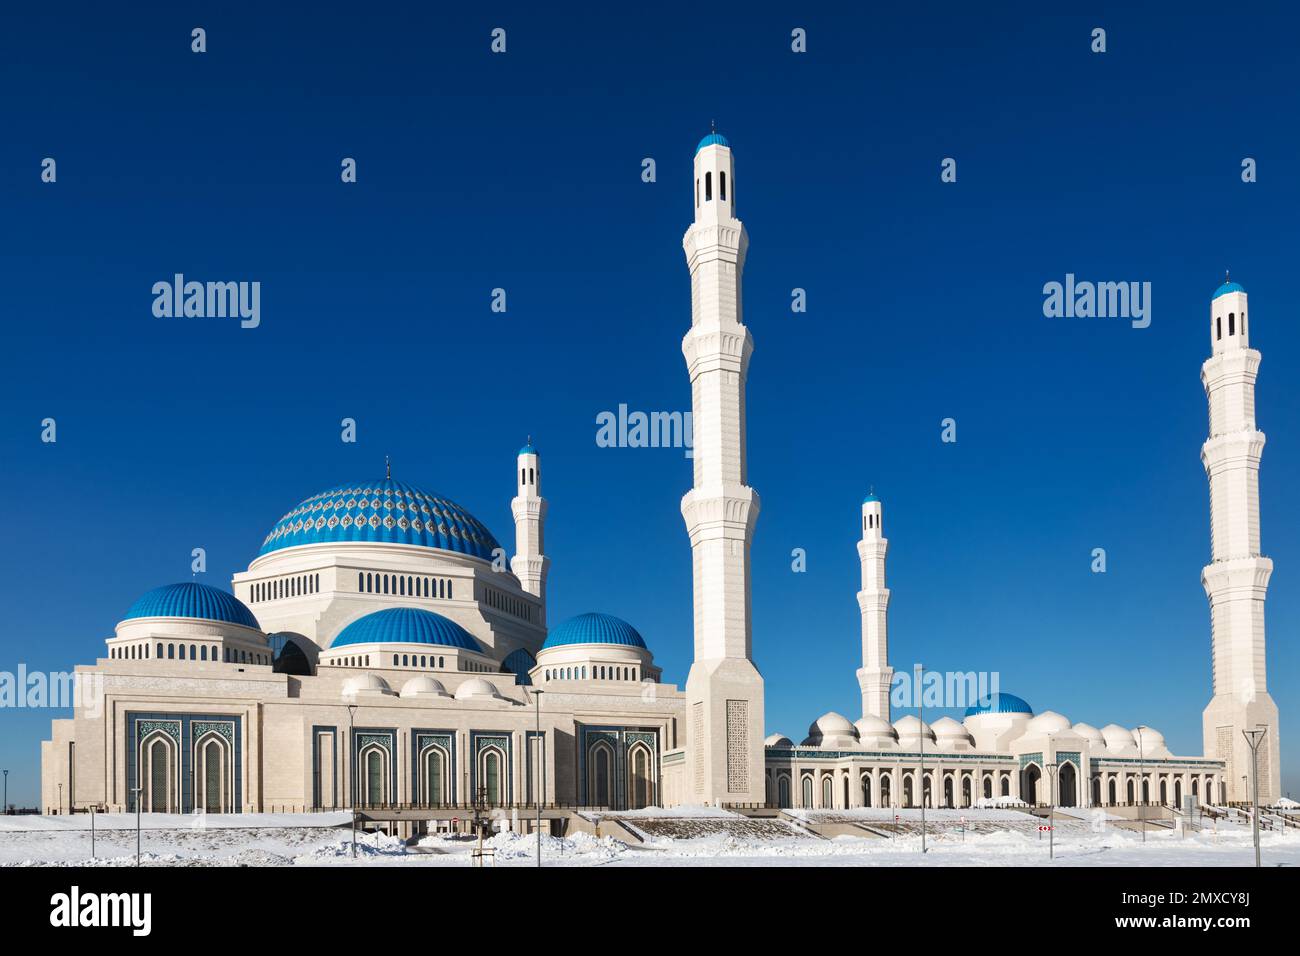 Grande mosquée d'Astana la plus grande mosquée d'Asie centrale et l'une des plus grandes au monde, Astana, Kazakhstan Banque D'Images